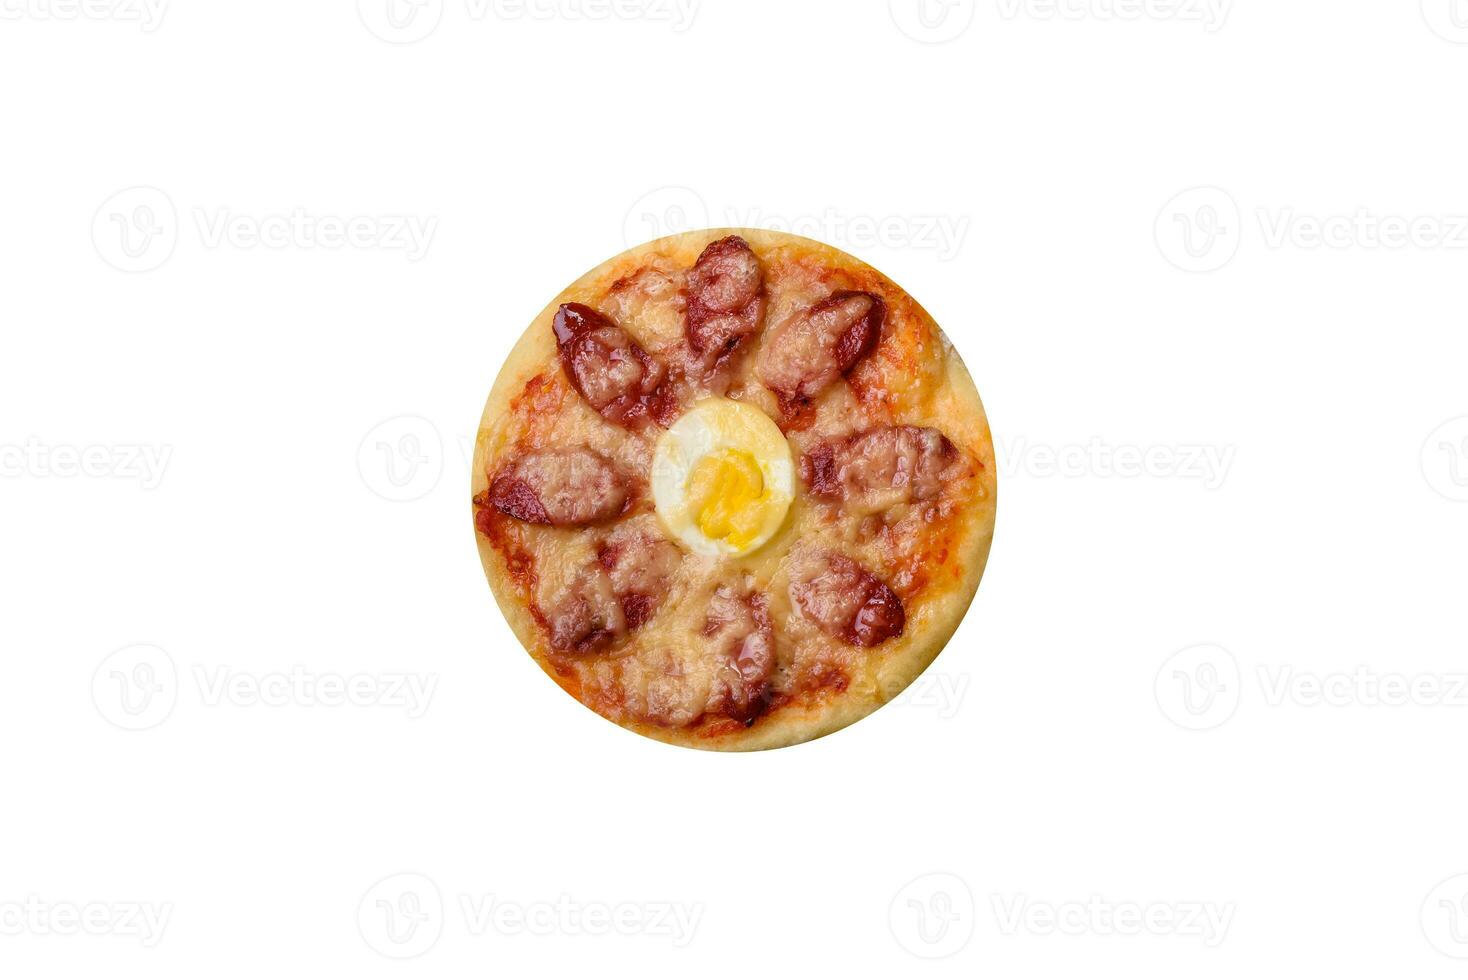 hemlagad pizza med korvar, tomater, ost, kryddor och örter på en trä- skärande styrelse foto